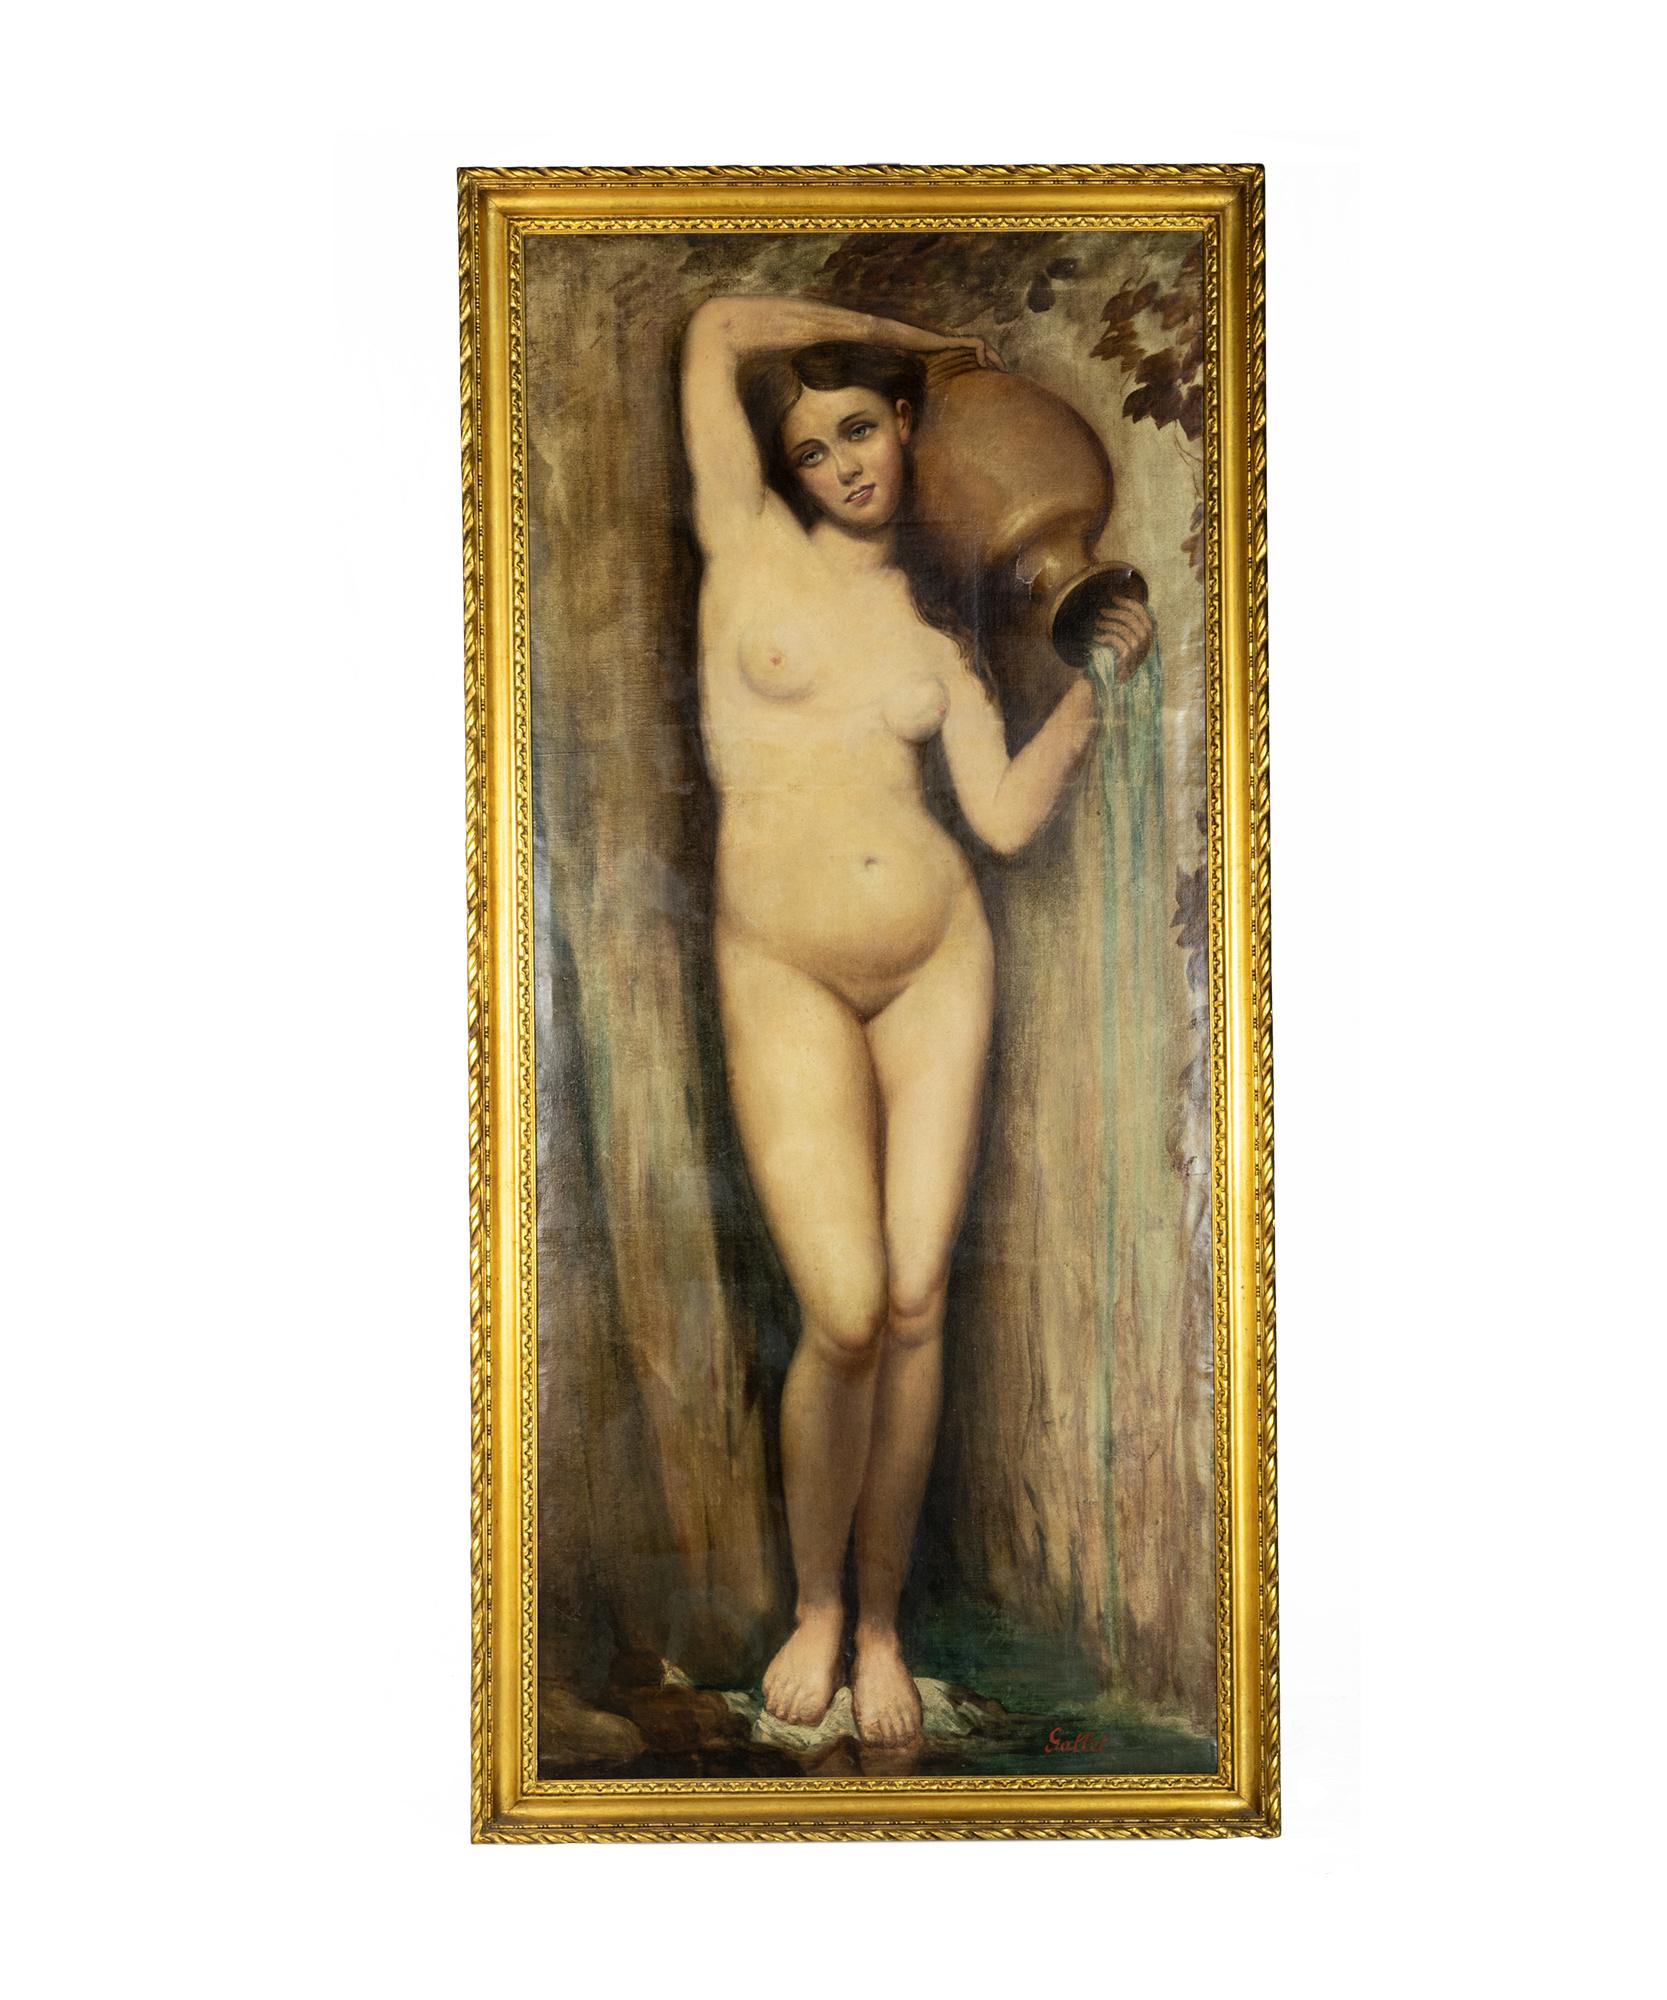 Großes Gemälde eines nackten, vorraffaelitisch beeinflussten Mädchens mit einer âmphore des französischen Malers Louis Gallet, der in Suiss geboren wurde.
Die Darstellung der idealisierten weiblichen Form.  
Öl auf Leinwand und Signatur